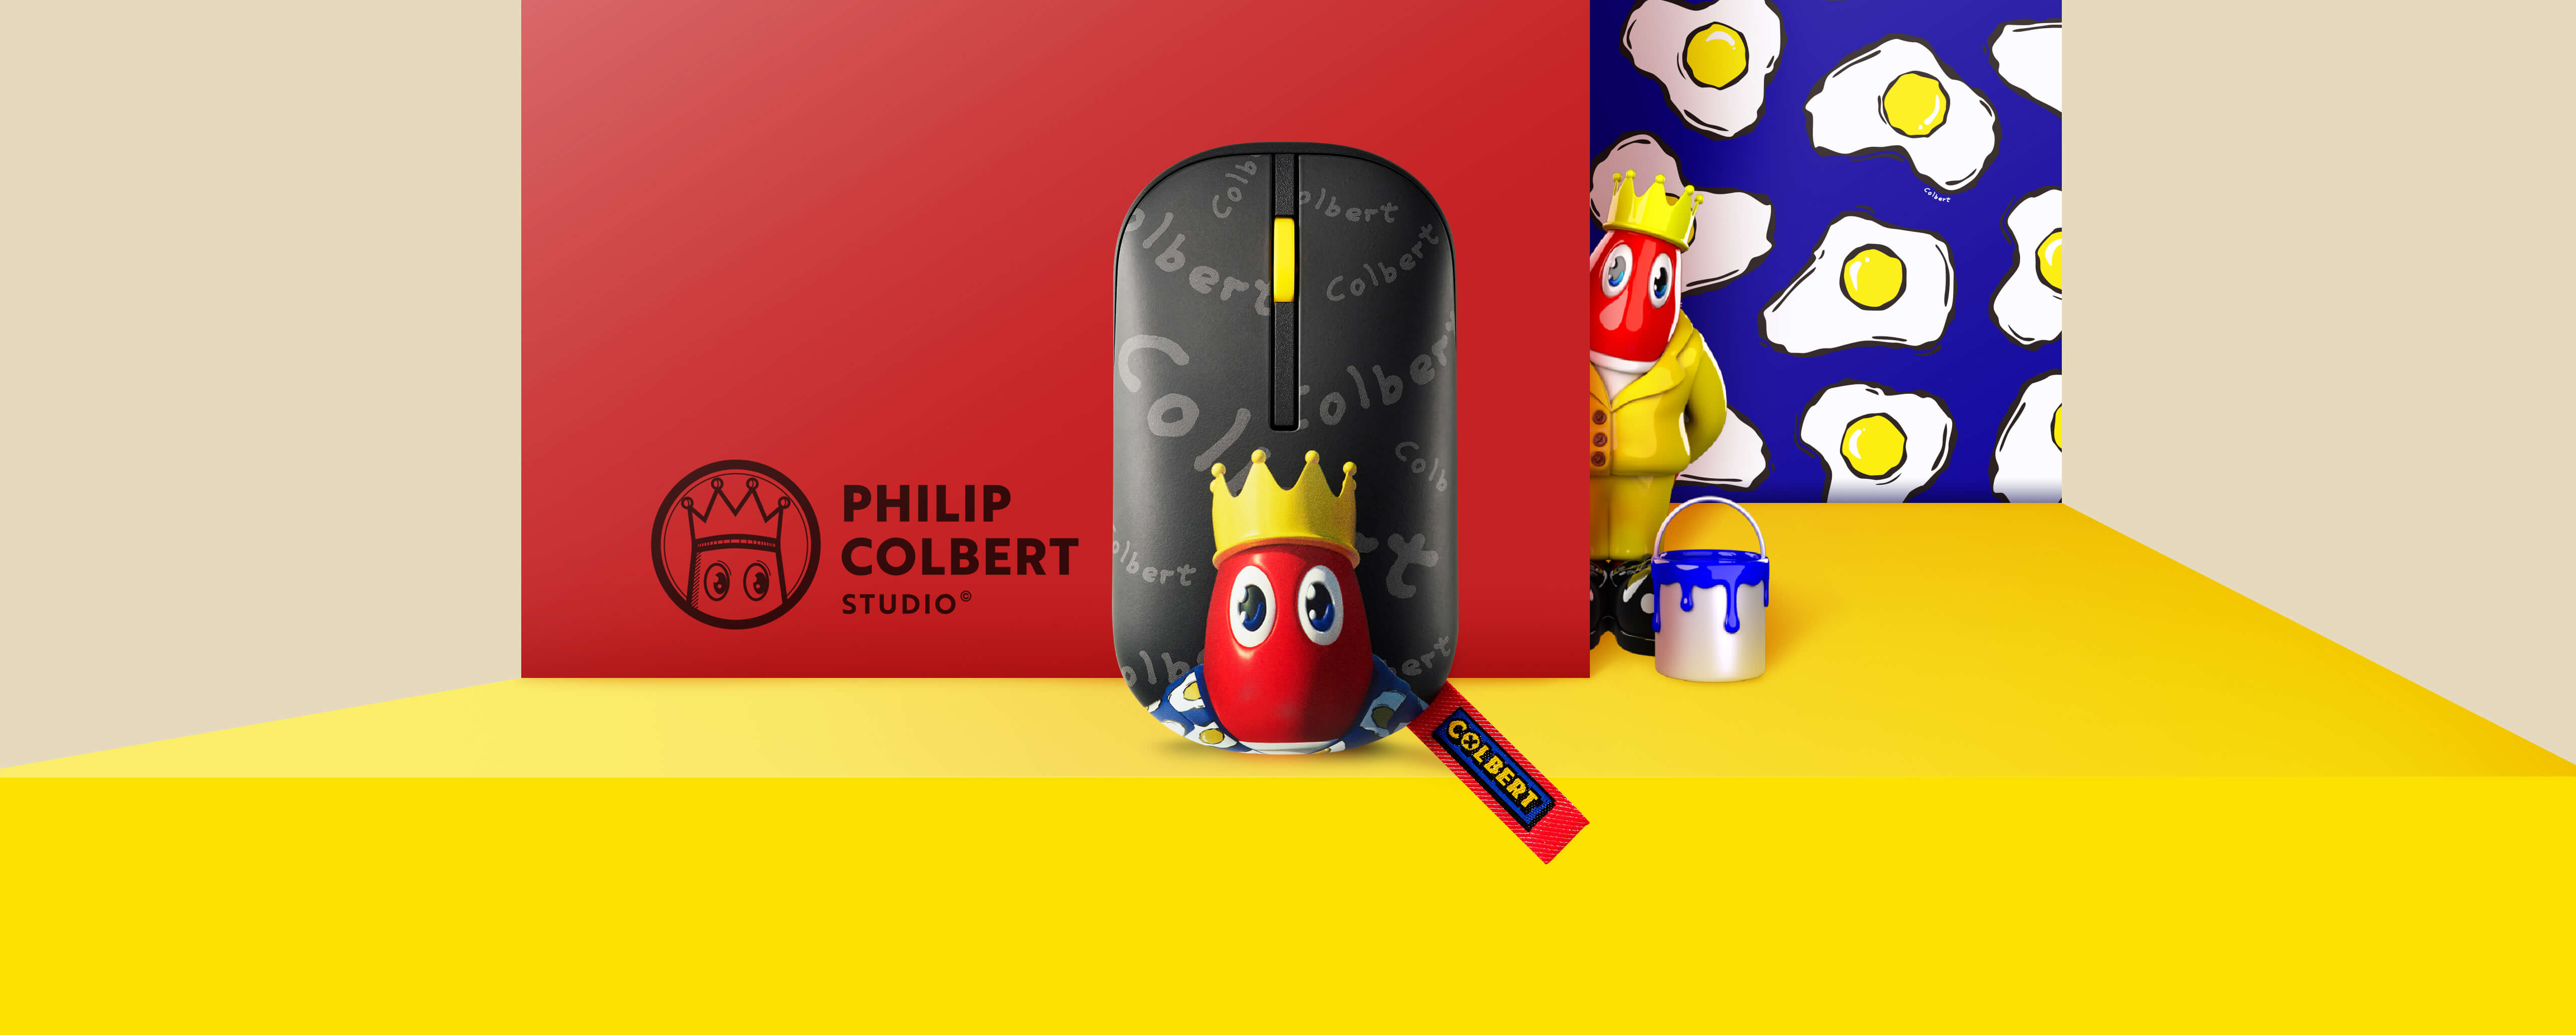 De ASUS Marshmallow Mouse MD100 Philip Colbert Edition is voorzien van een zwarte afwerking en Philip Colberts iconische kreeftcartoon. Een kreeftenfiguur in een geel pak tekent zich af tegen een kleurrijke achtergrond.